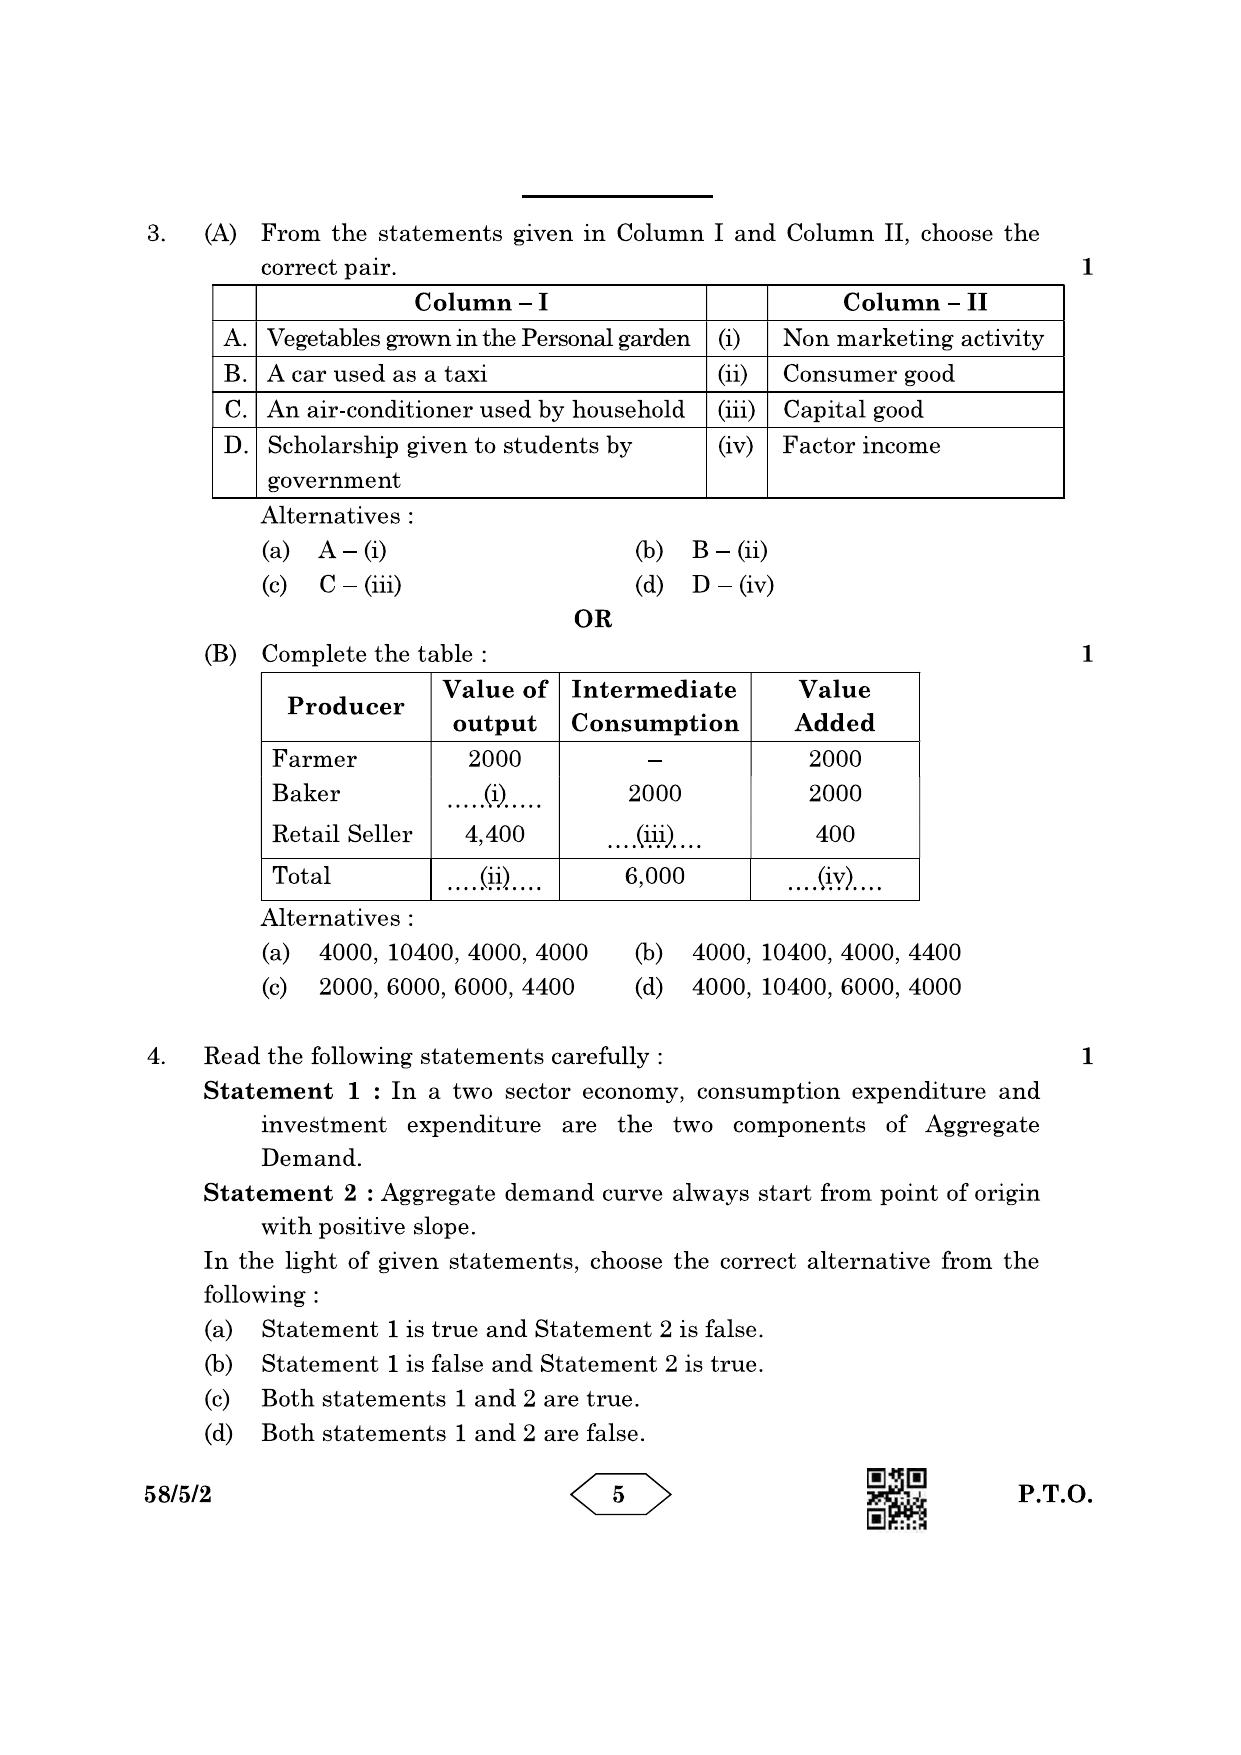 CBSE Class 12 58-5-2 Economics 2023 Question Paper - Page 5